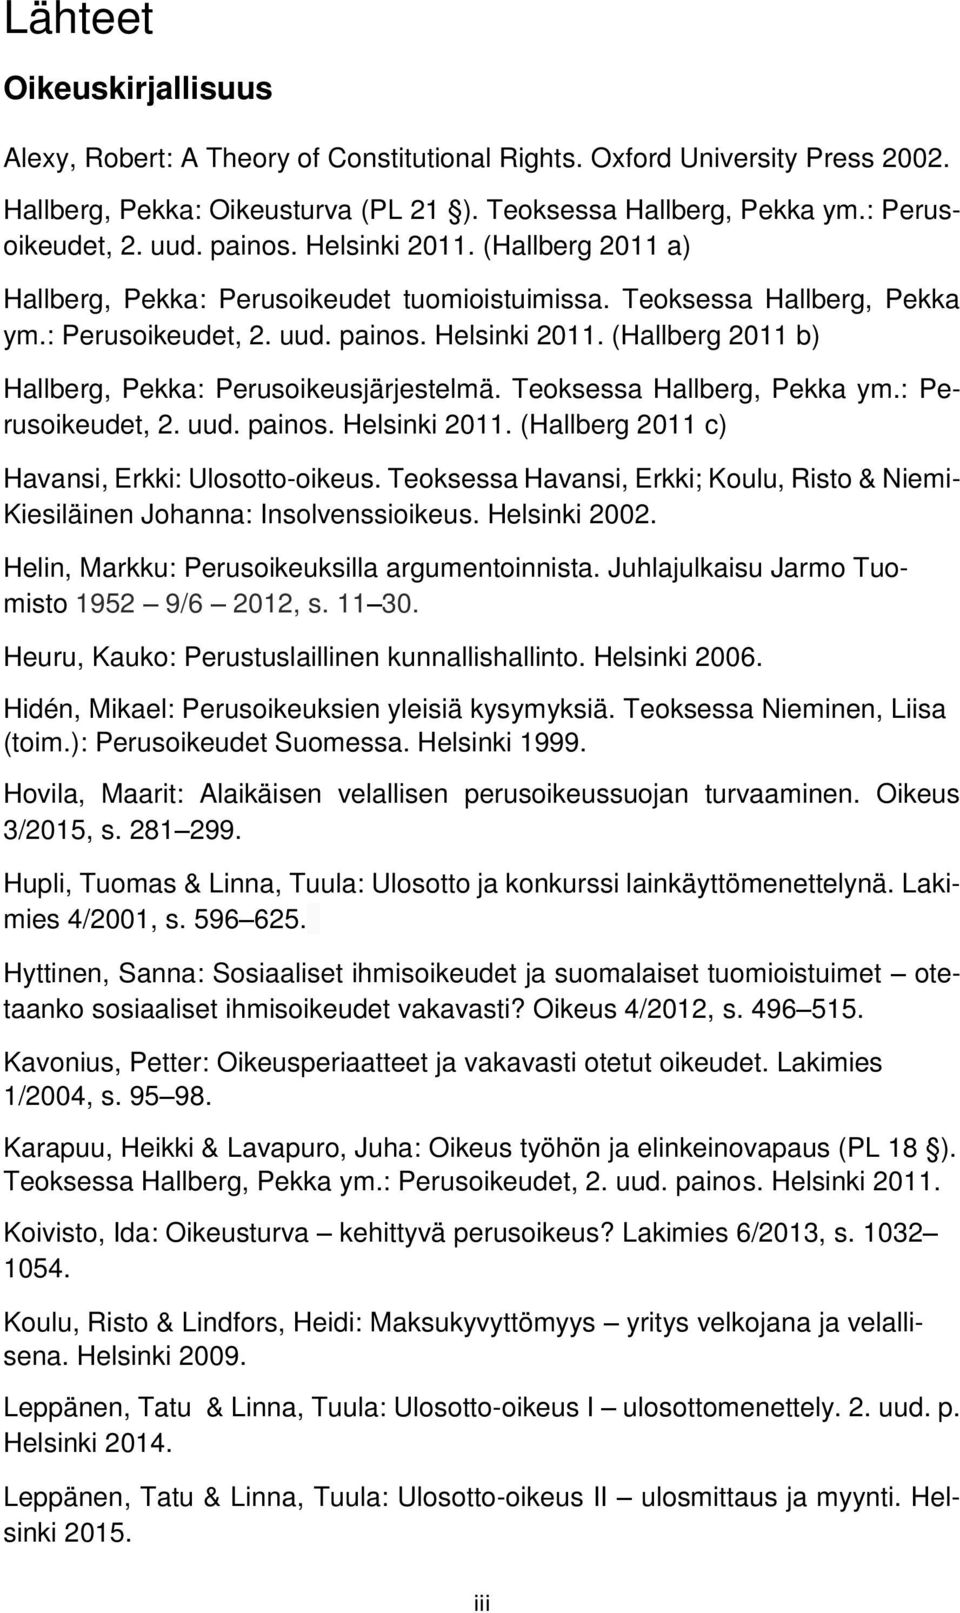 Teoksessa Hallberg, Pekka ym.: Perusoikeudet, 2. uud. painos. Helsinki 2011. (Hallberg 2011 c) Havansi, Erkki: Ulosotto-oikeus.